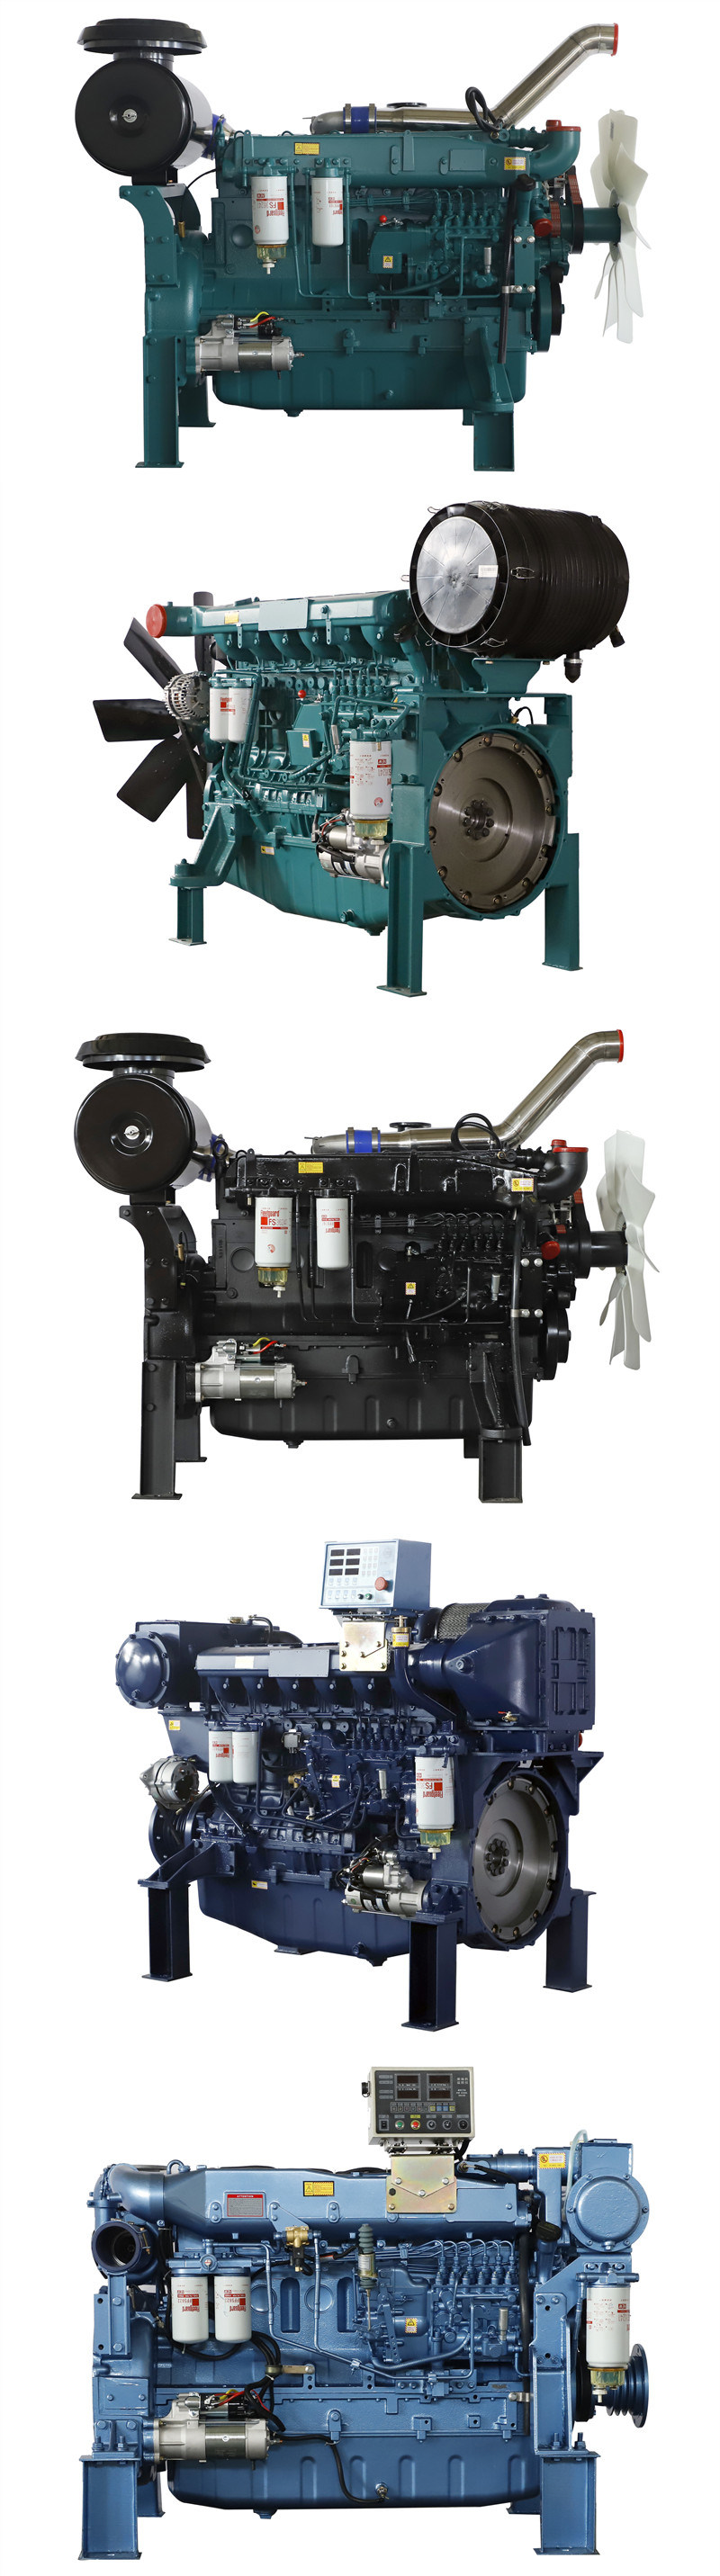 Reasonable Price Diesel Engine Manufacturer 6 Cylinder Diesel Engine Power